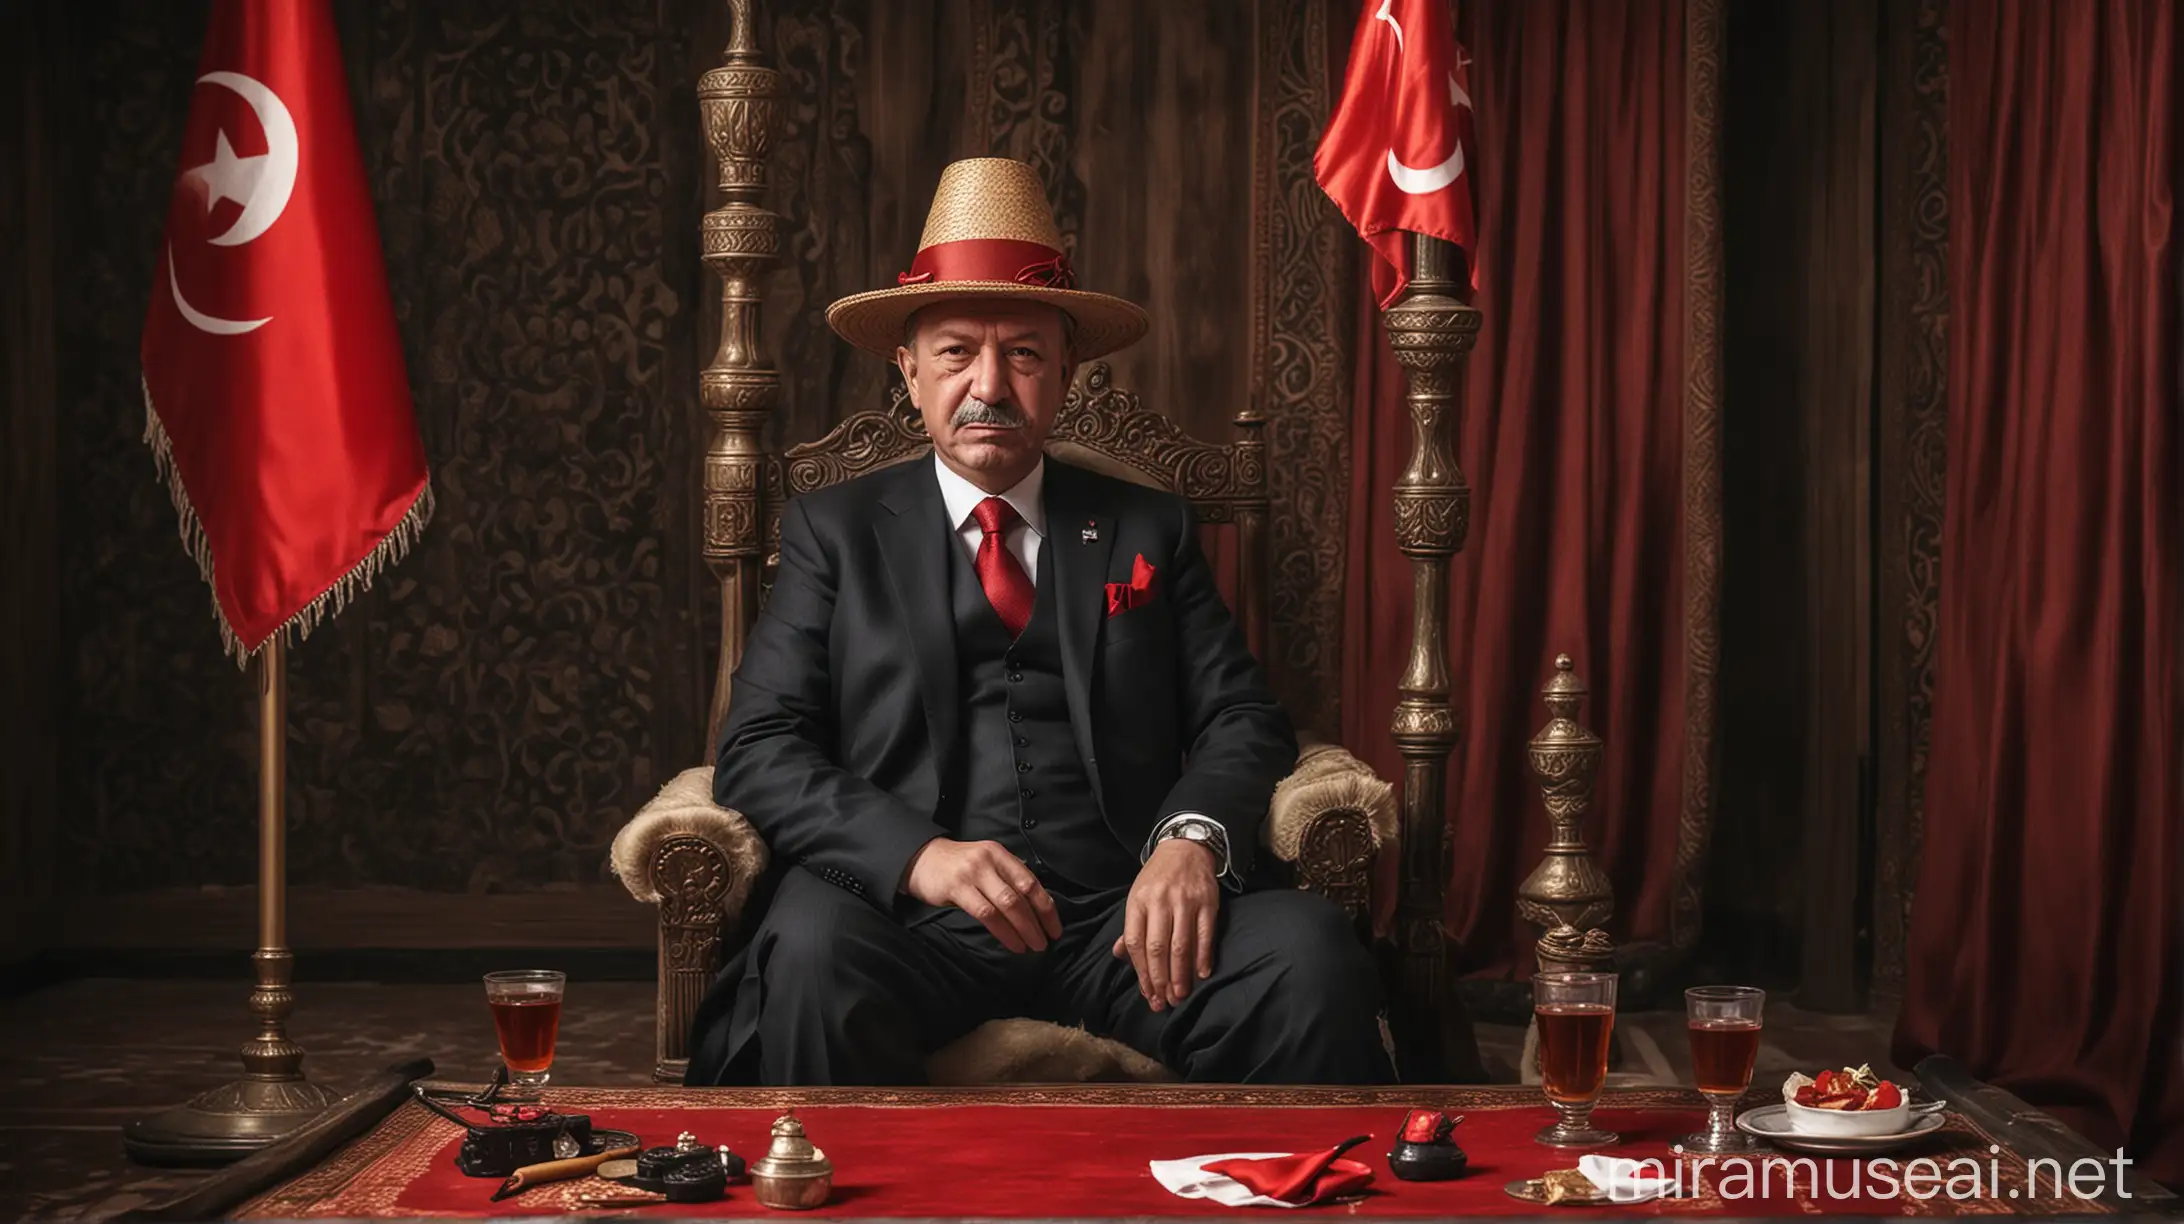 Der türkische Präsident sitzt in einer Shisha Bar und auf dem Kopf trägt er einen Strohhut, dass ein rotes band hand. die türkische Flagge ist im Hintergrund auf dem Tisch steht ein türkischer tee und er sitzt auf einem Thron. das bild soll lustige Emotionen hervorrufen

